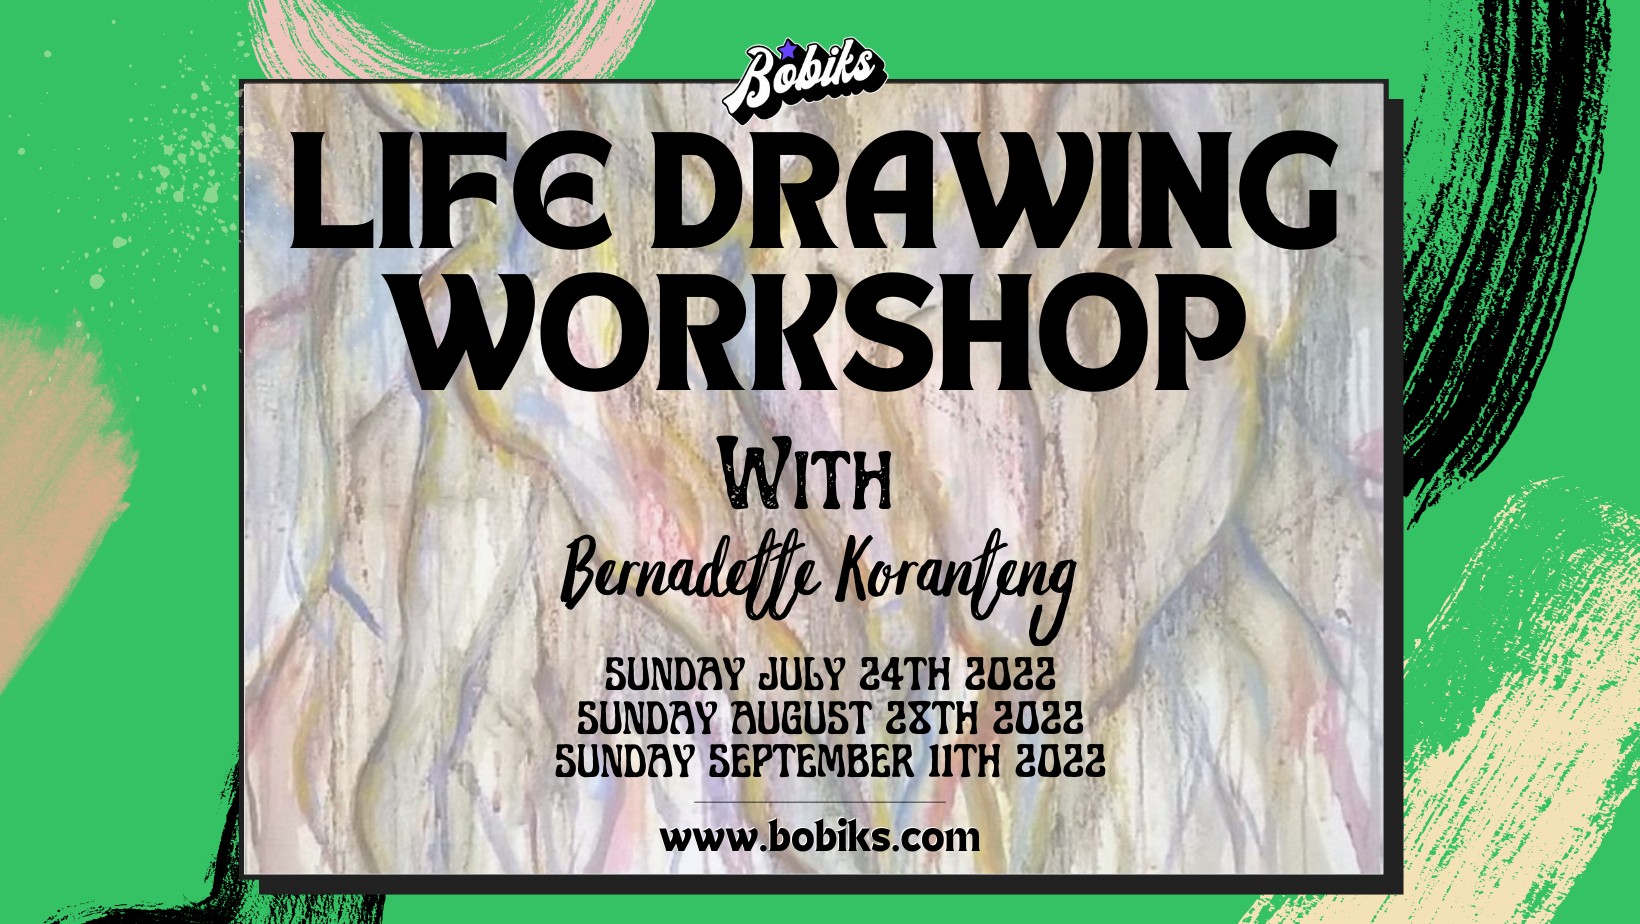 Life Drawing Workshop with Bernadette Koranteng